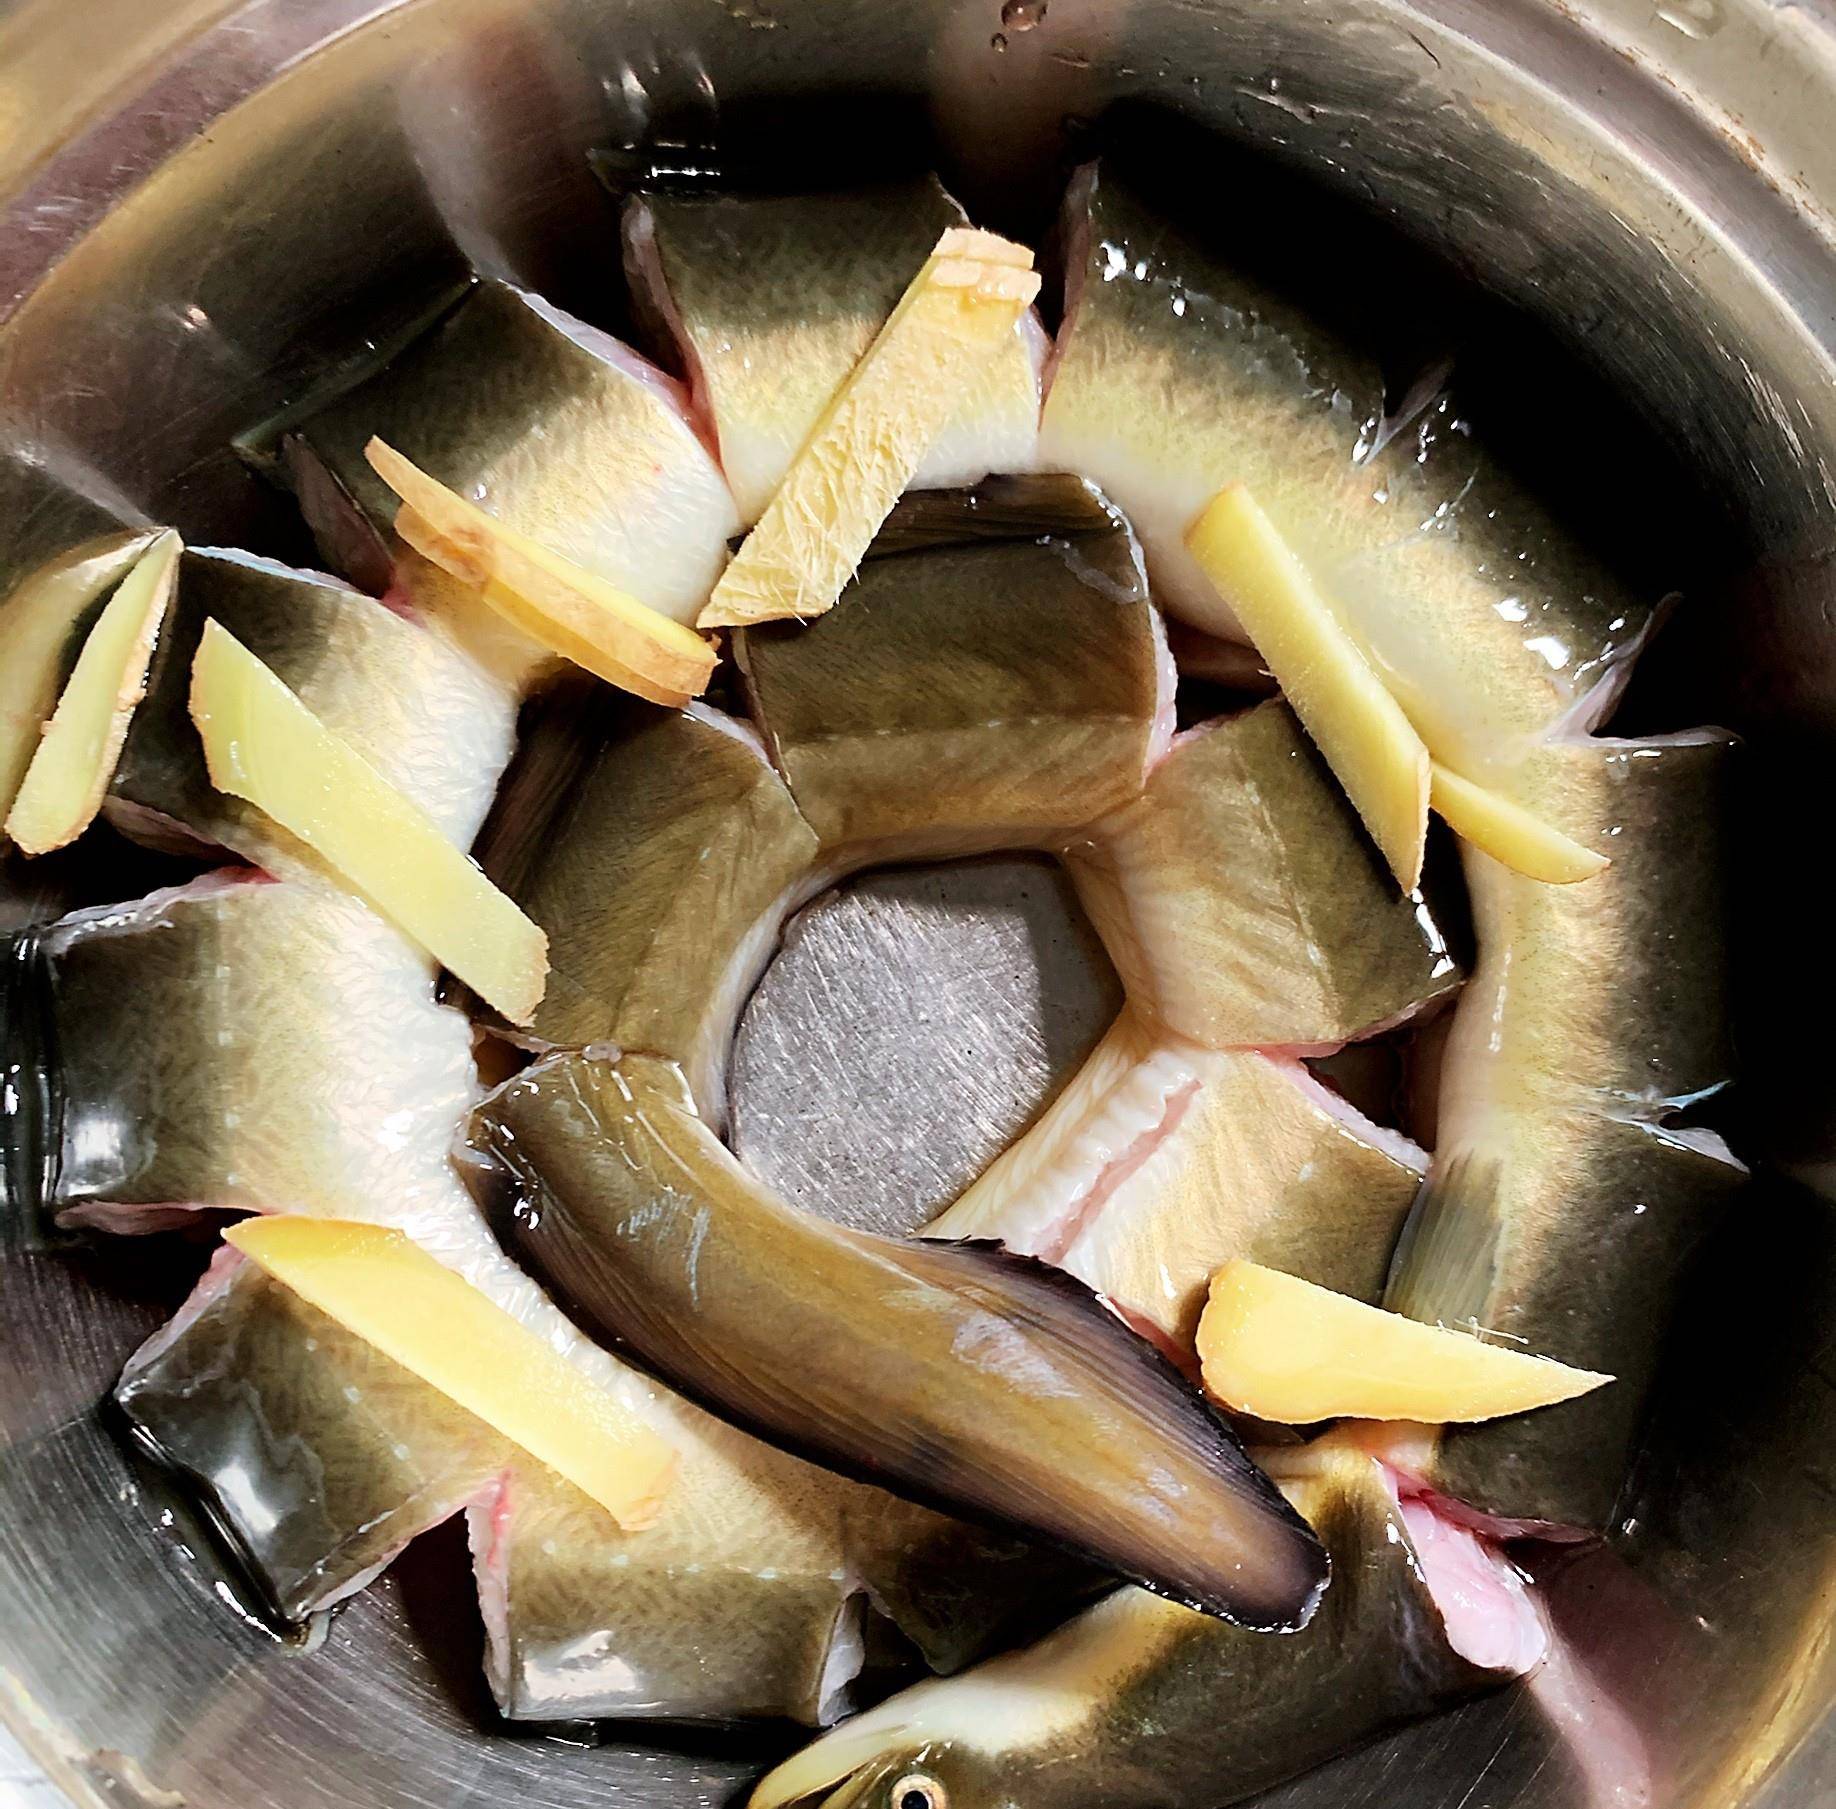 原创清蒸鳗鱼用金华火腿吊鲜增香肉质细嫩有营养秋冬进补上选